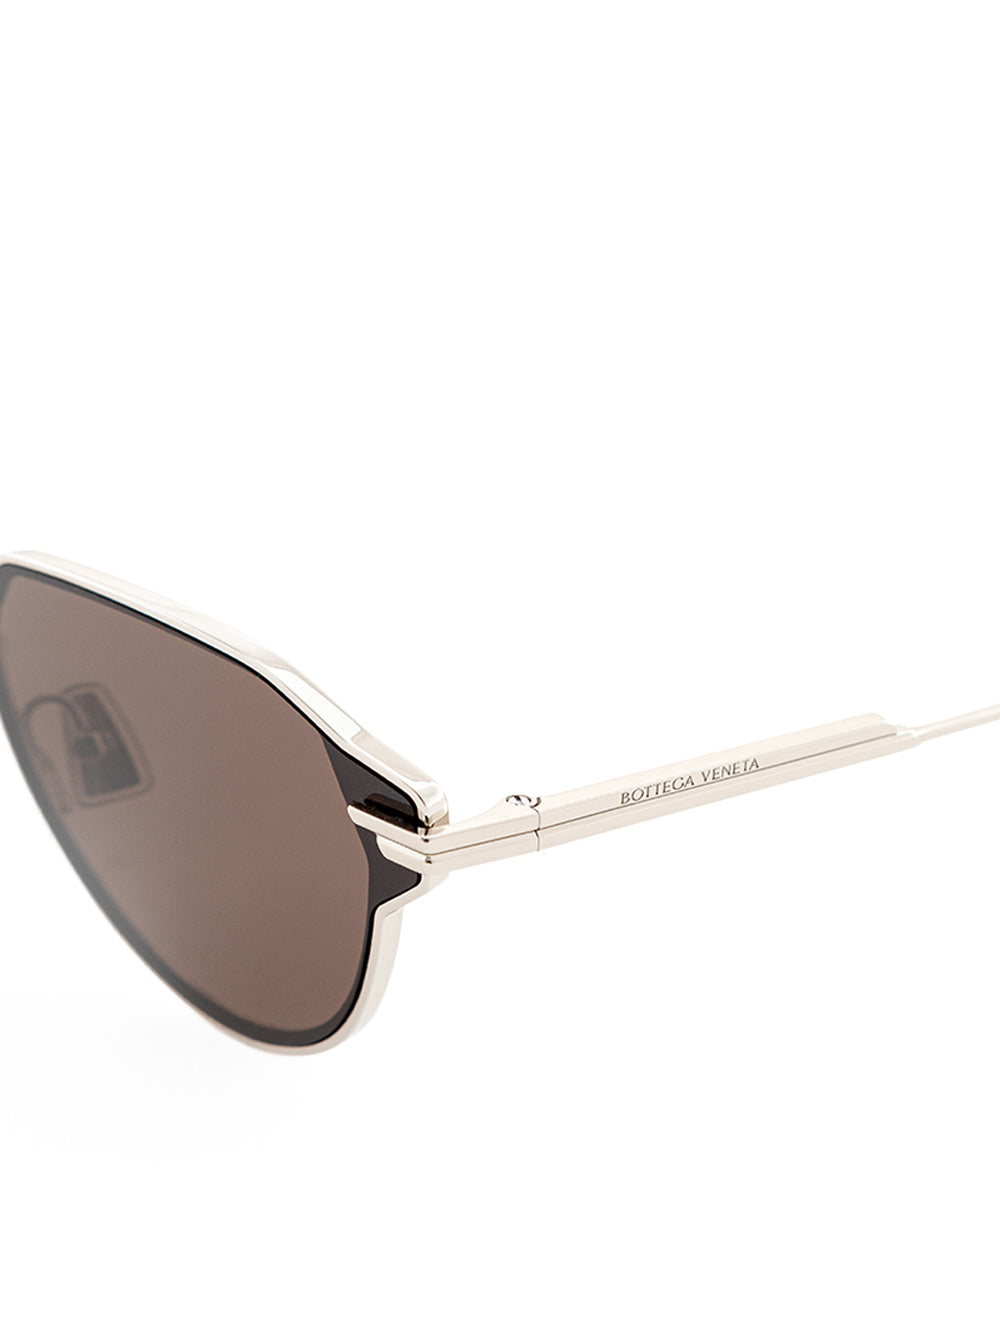 Bottega Veneta Metal Silver Sunglasses - DEA STILOSA MILANO